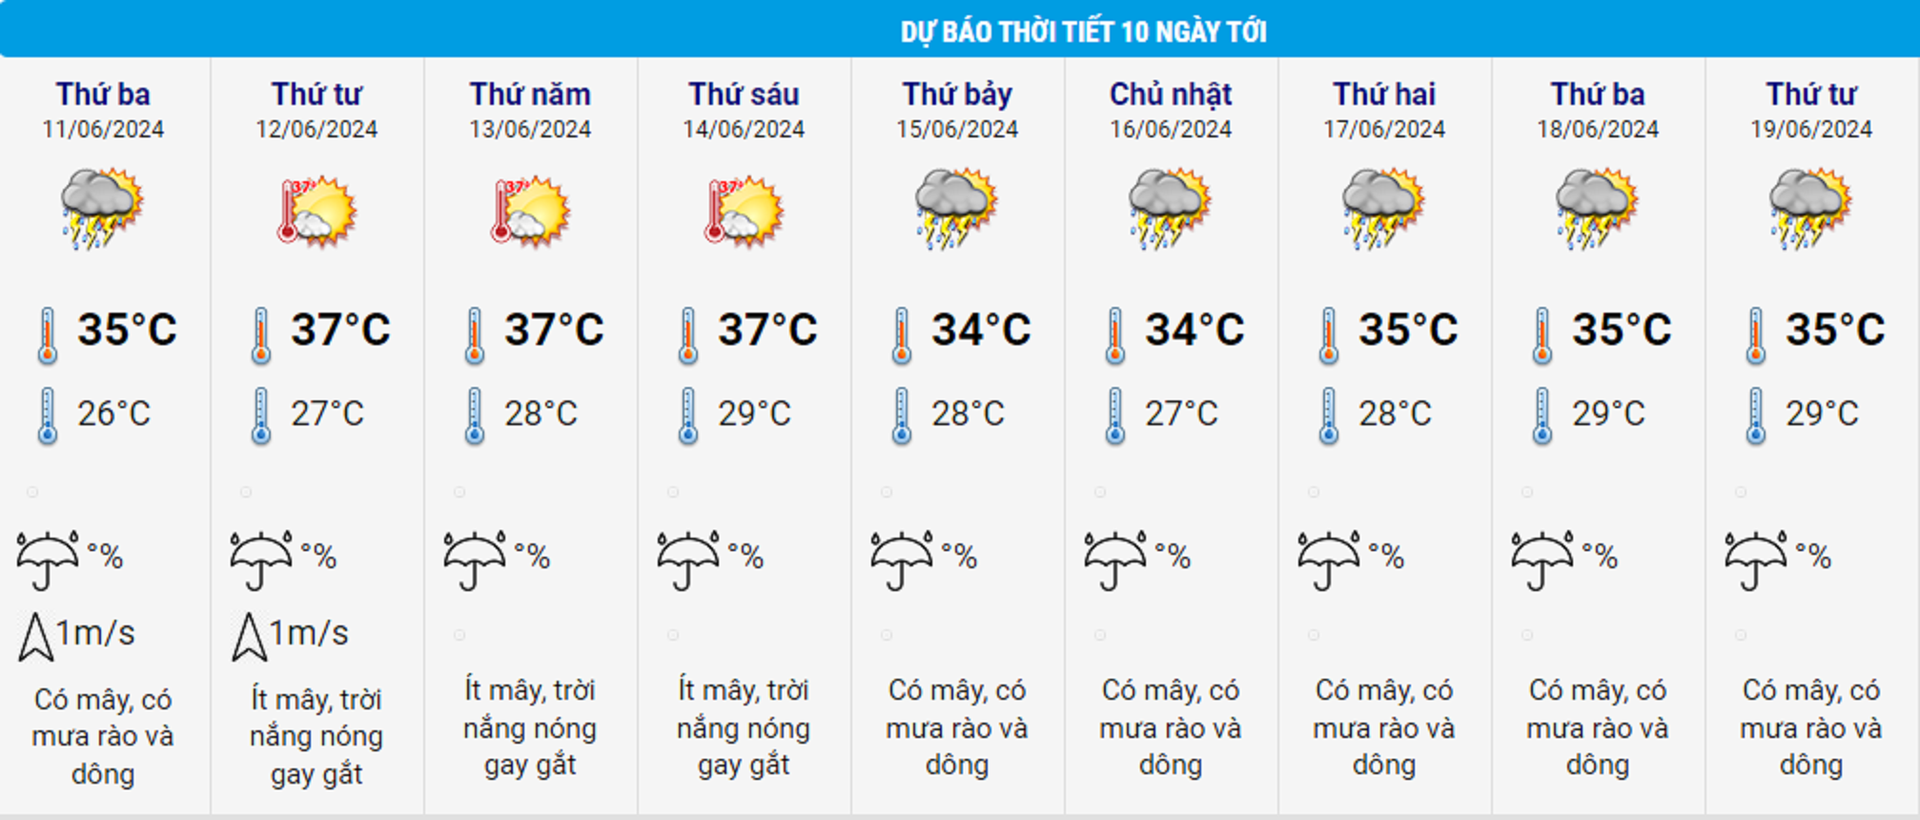 Dự báo thời tiết Hà Nội từ 11/ 6 đến 19/6.